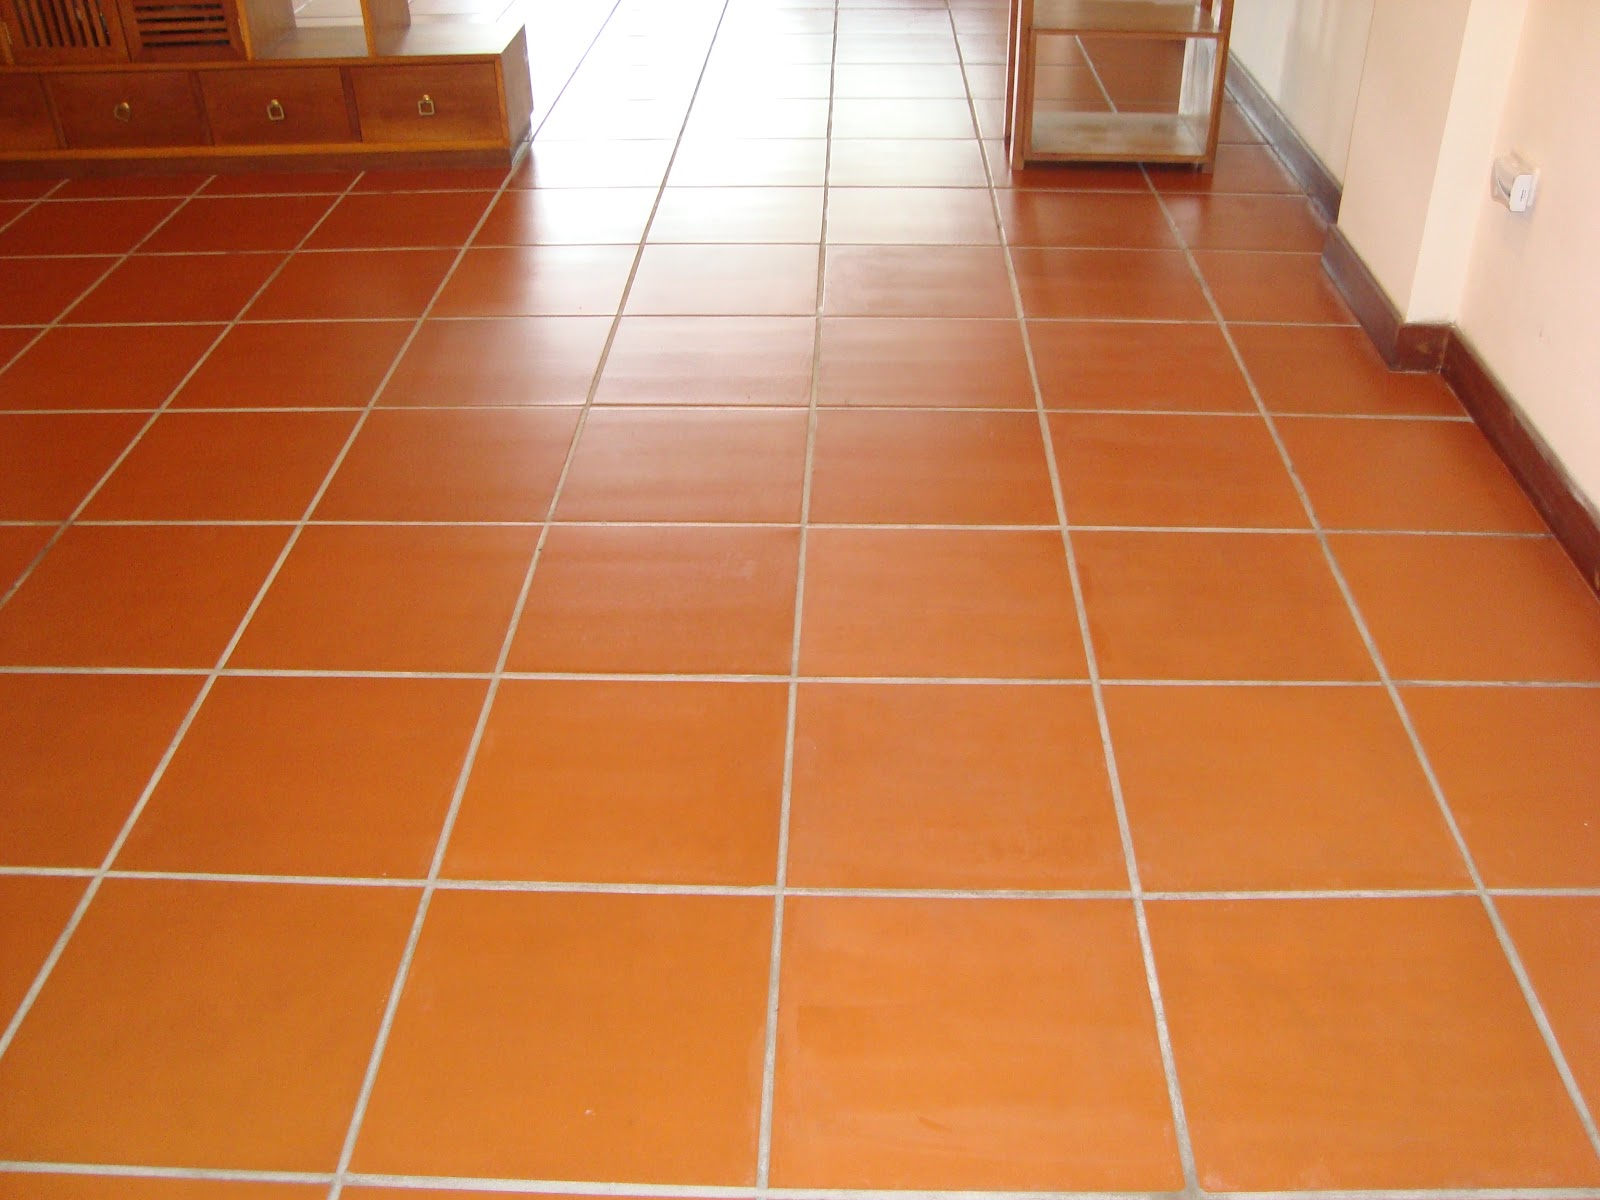 Với những mẹo vệ sinh sàn gạch đỏ đúng cách, bạn sẽ bảo đảm sạch sẽ và bền đẹp cho chiếc lát gạch đẹp nhà bạn. Đừng bỏ lỡ những hình ảnh hướng dẫn cách làm sạch đúng cách.